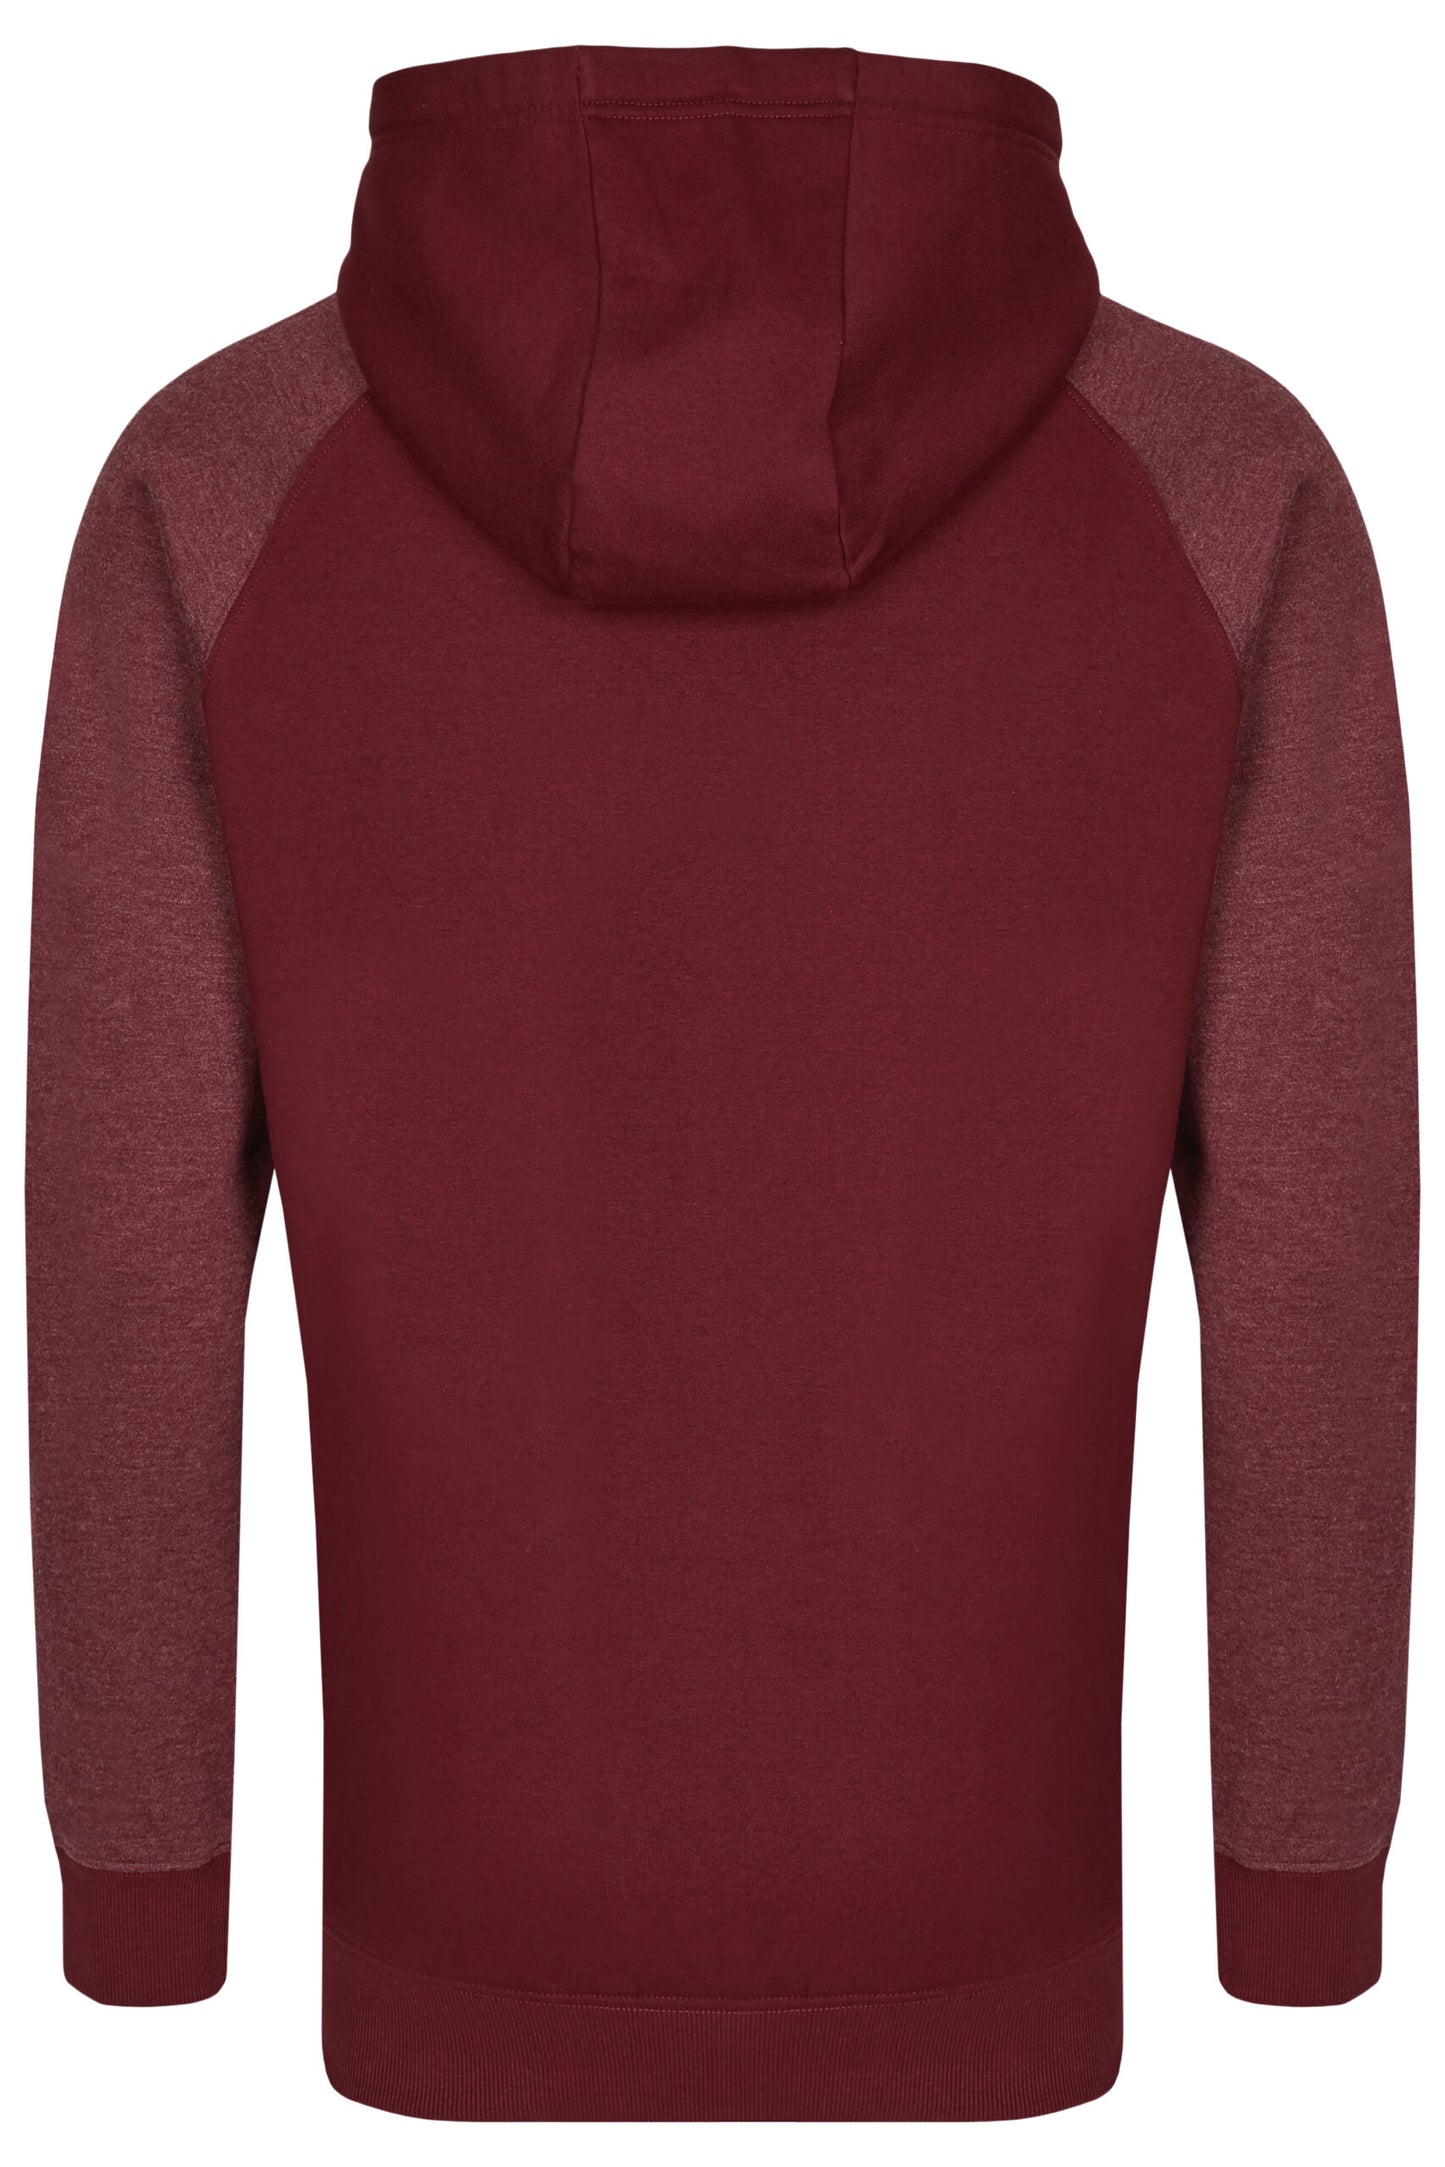 MMT 0611 ― Bi-Color No Pocket Hoodie Sweatshirt - Burgund / Rot Melange